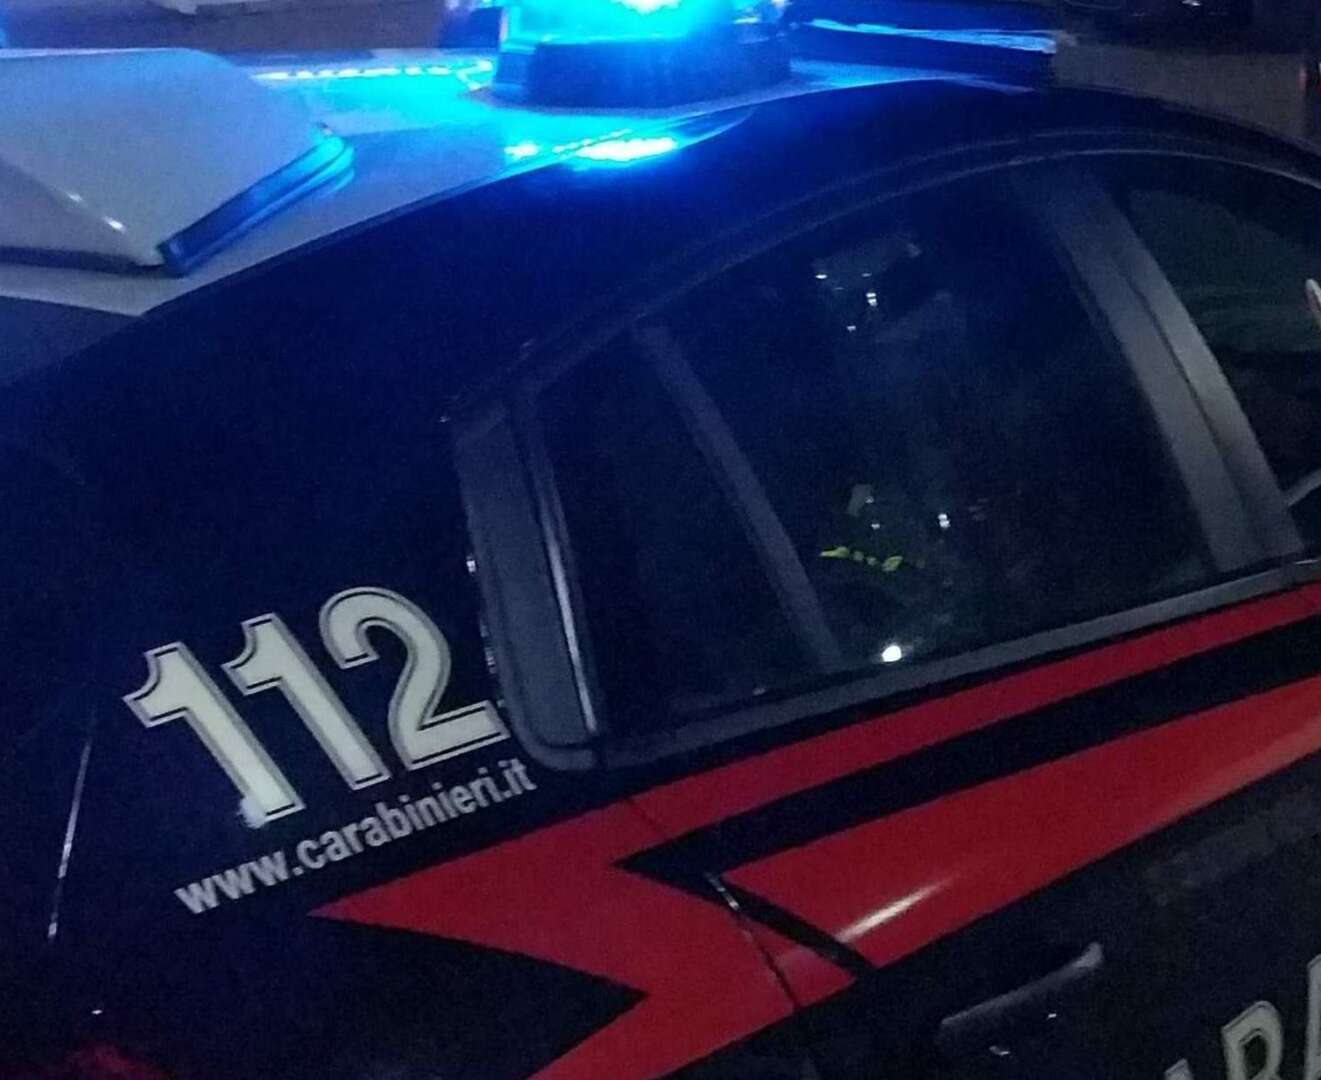 Tenta di bloccare i carabinieri scaricando materiale rubato, arrestato